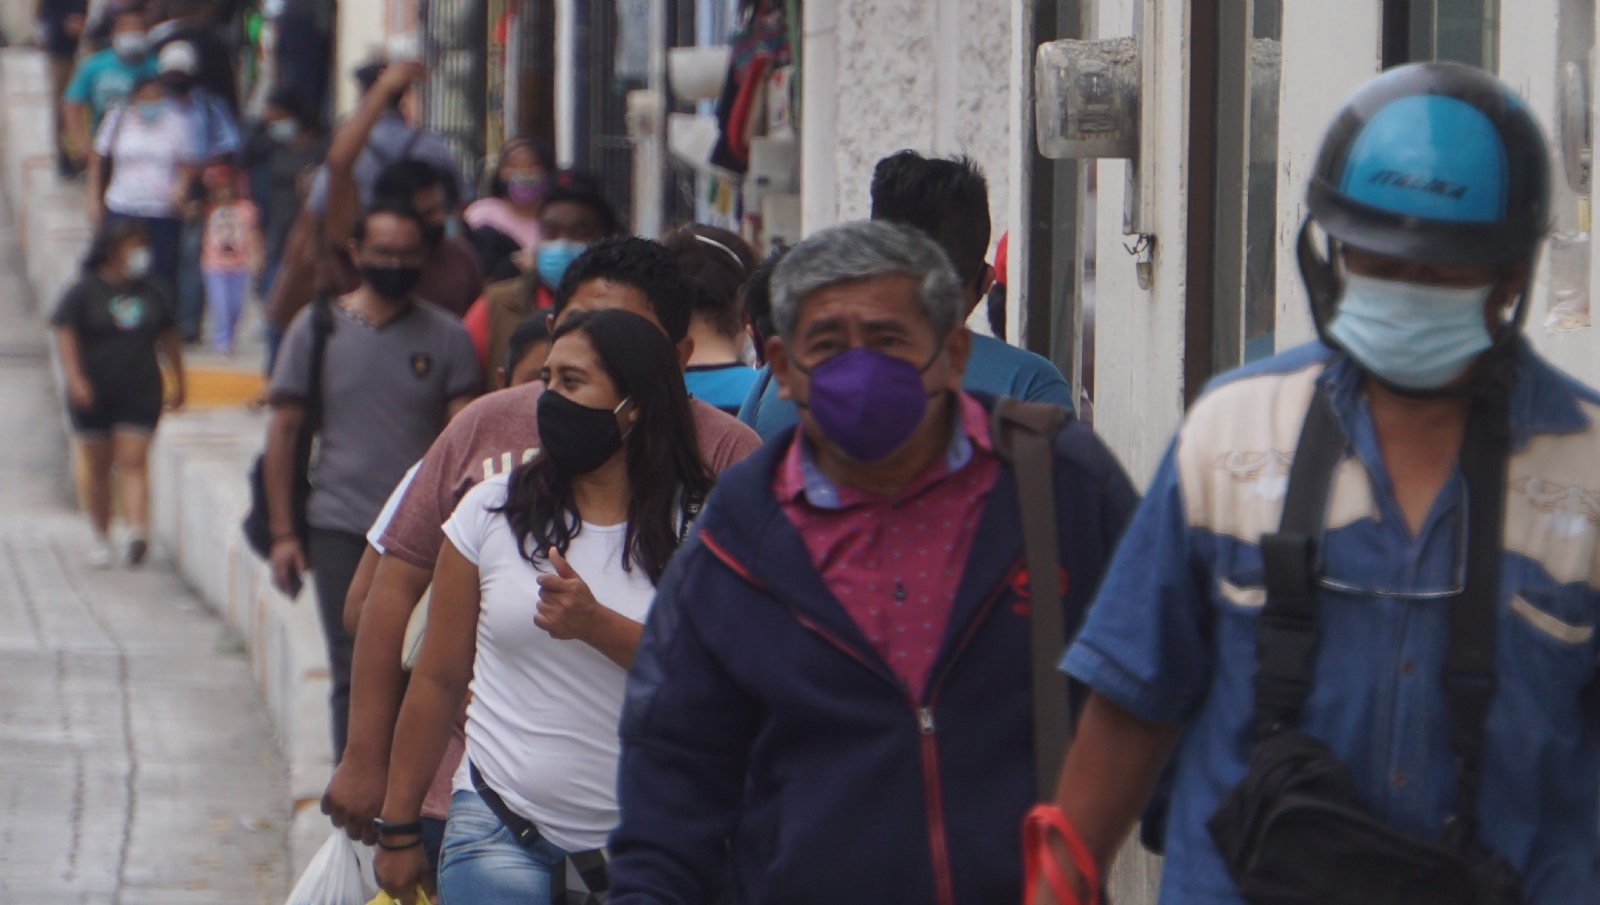 Campeche en el último lugar de crecimiento económico del país